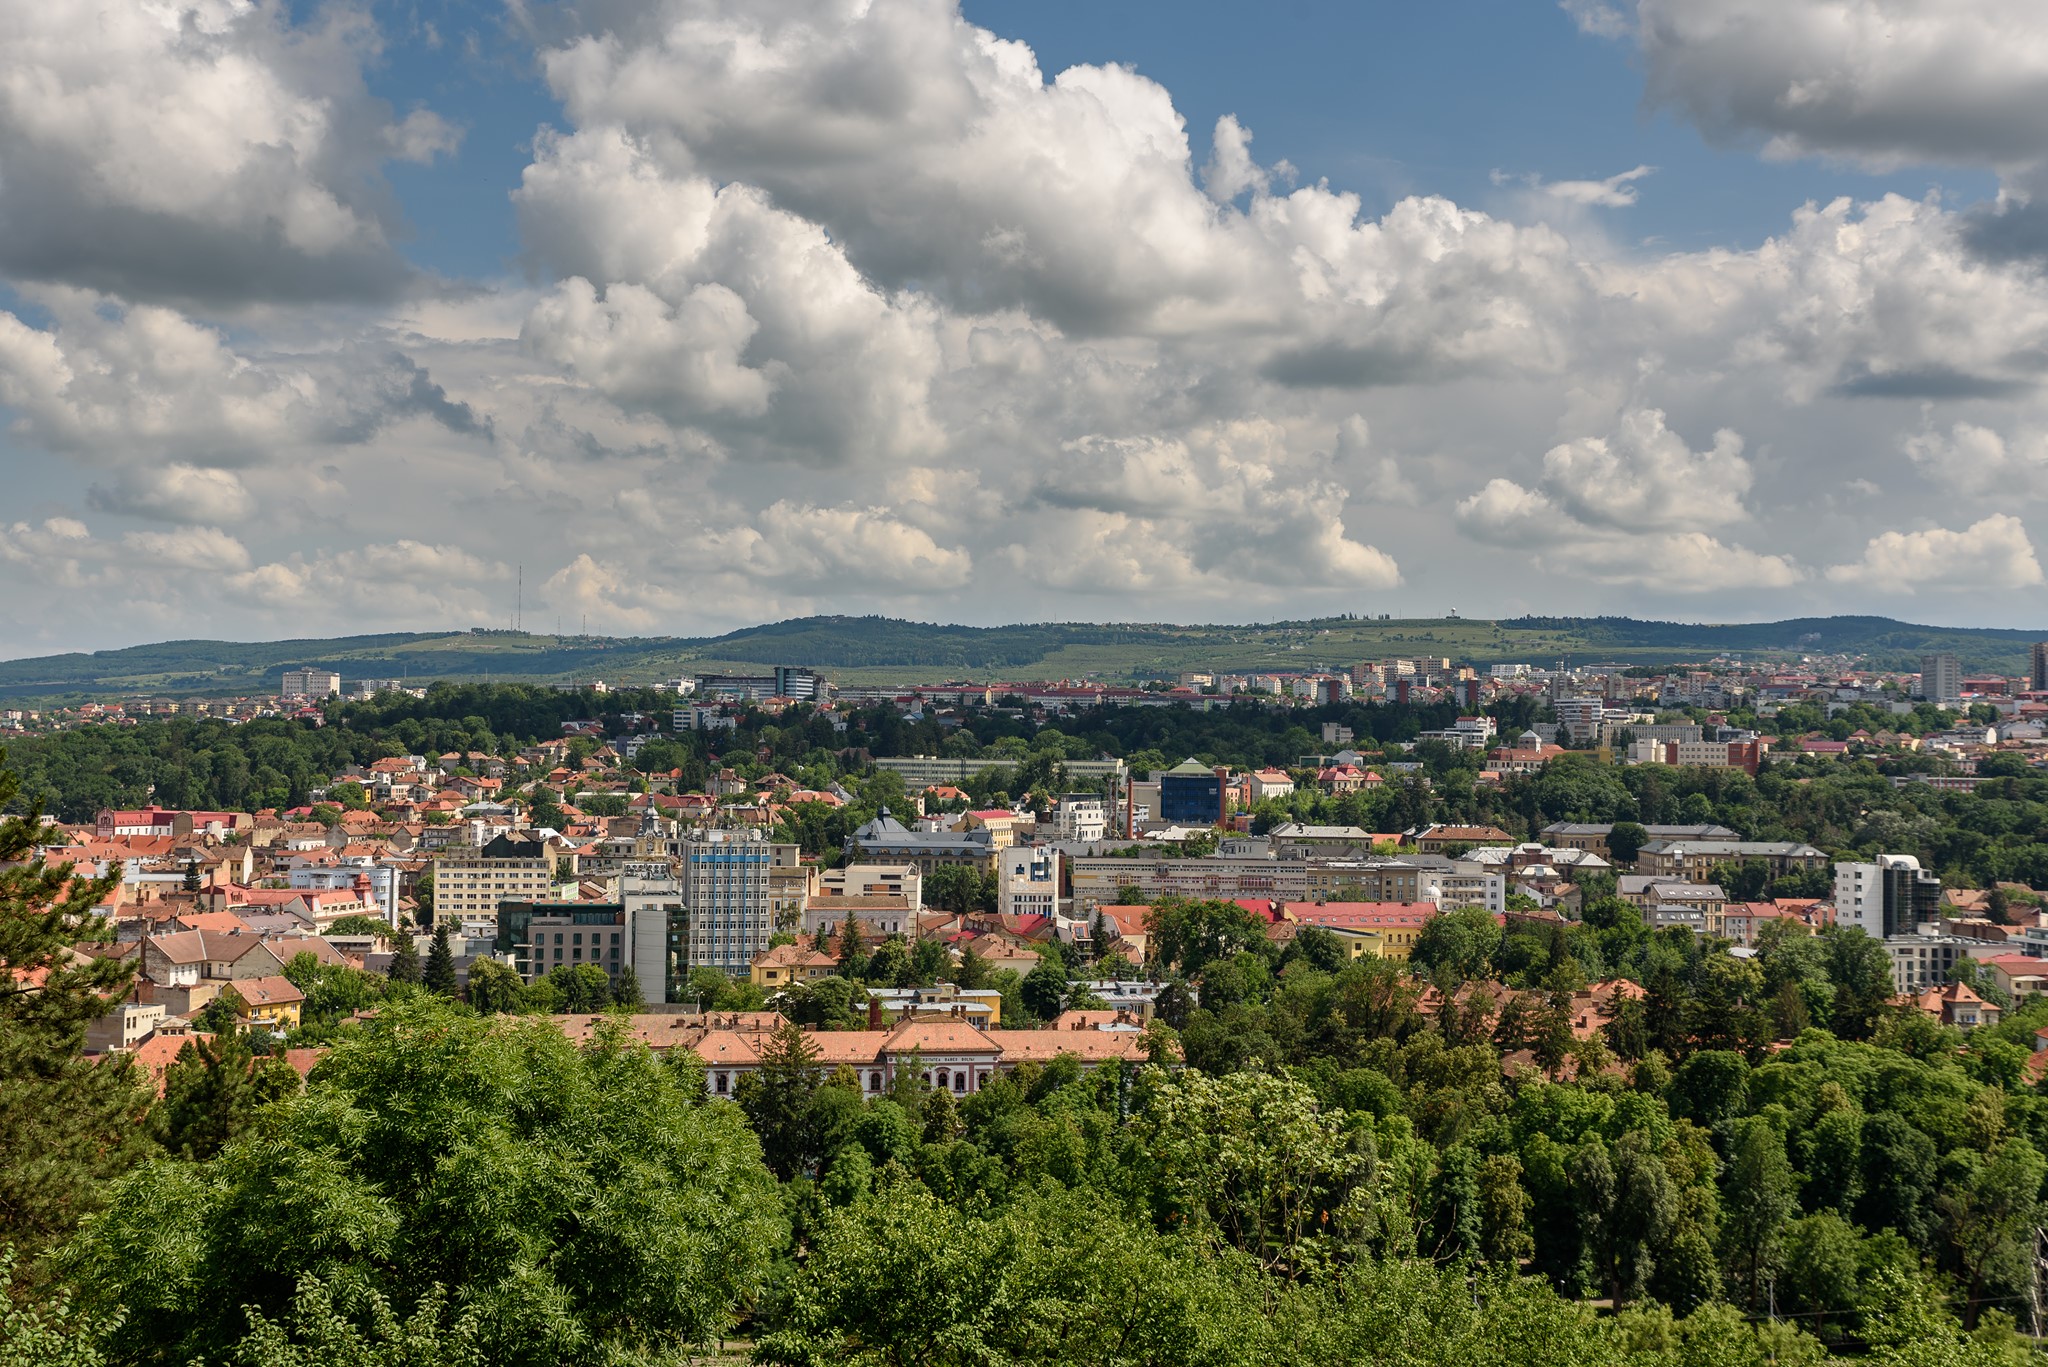 Cel mai scump din țara noastră este Cluj-Napoca, cu o medie de 1.940 de euro/mp. FOTO: Facebook/ Municipiul Cluj-Napoca. Fotograf: Radu Pădureanu